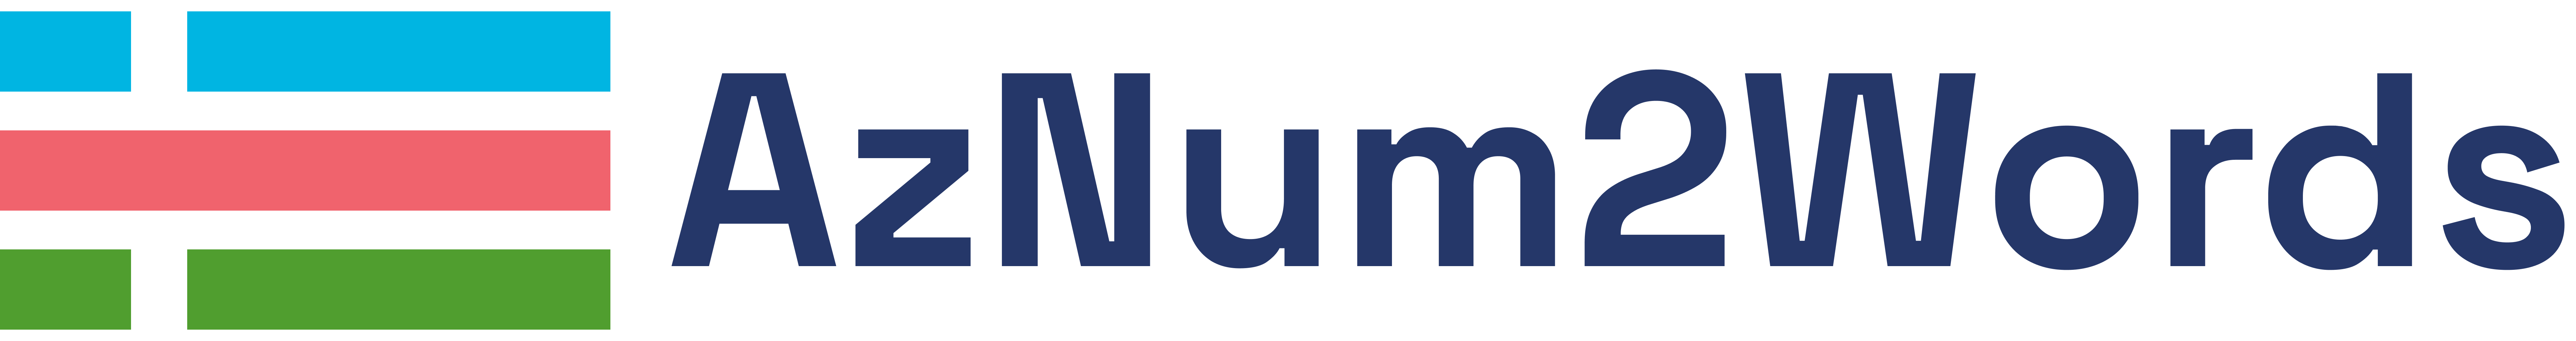 aznum2words logo